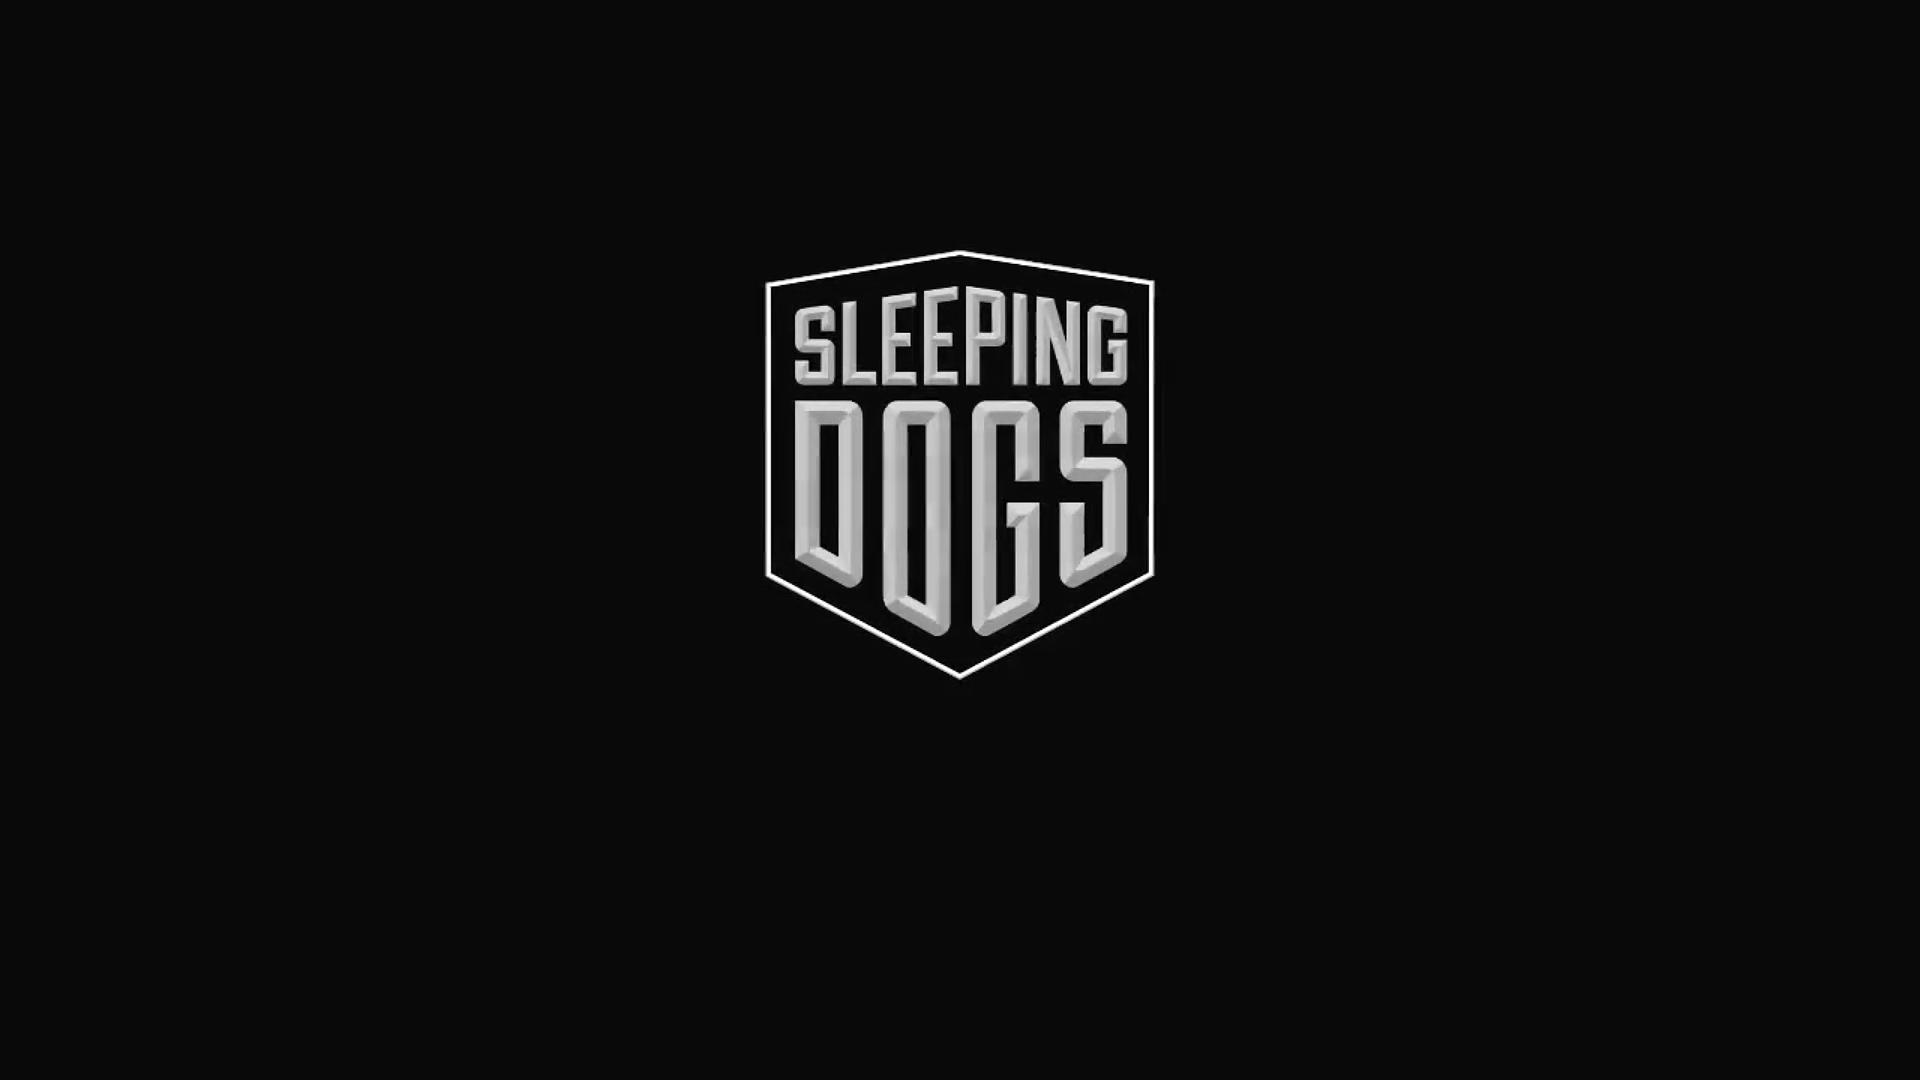 1080 sleeping dogs image